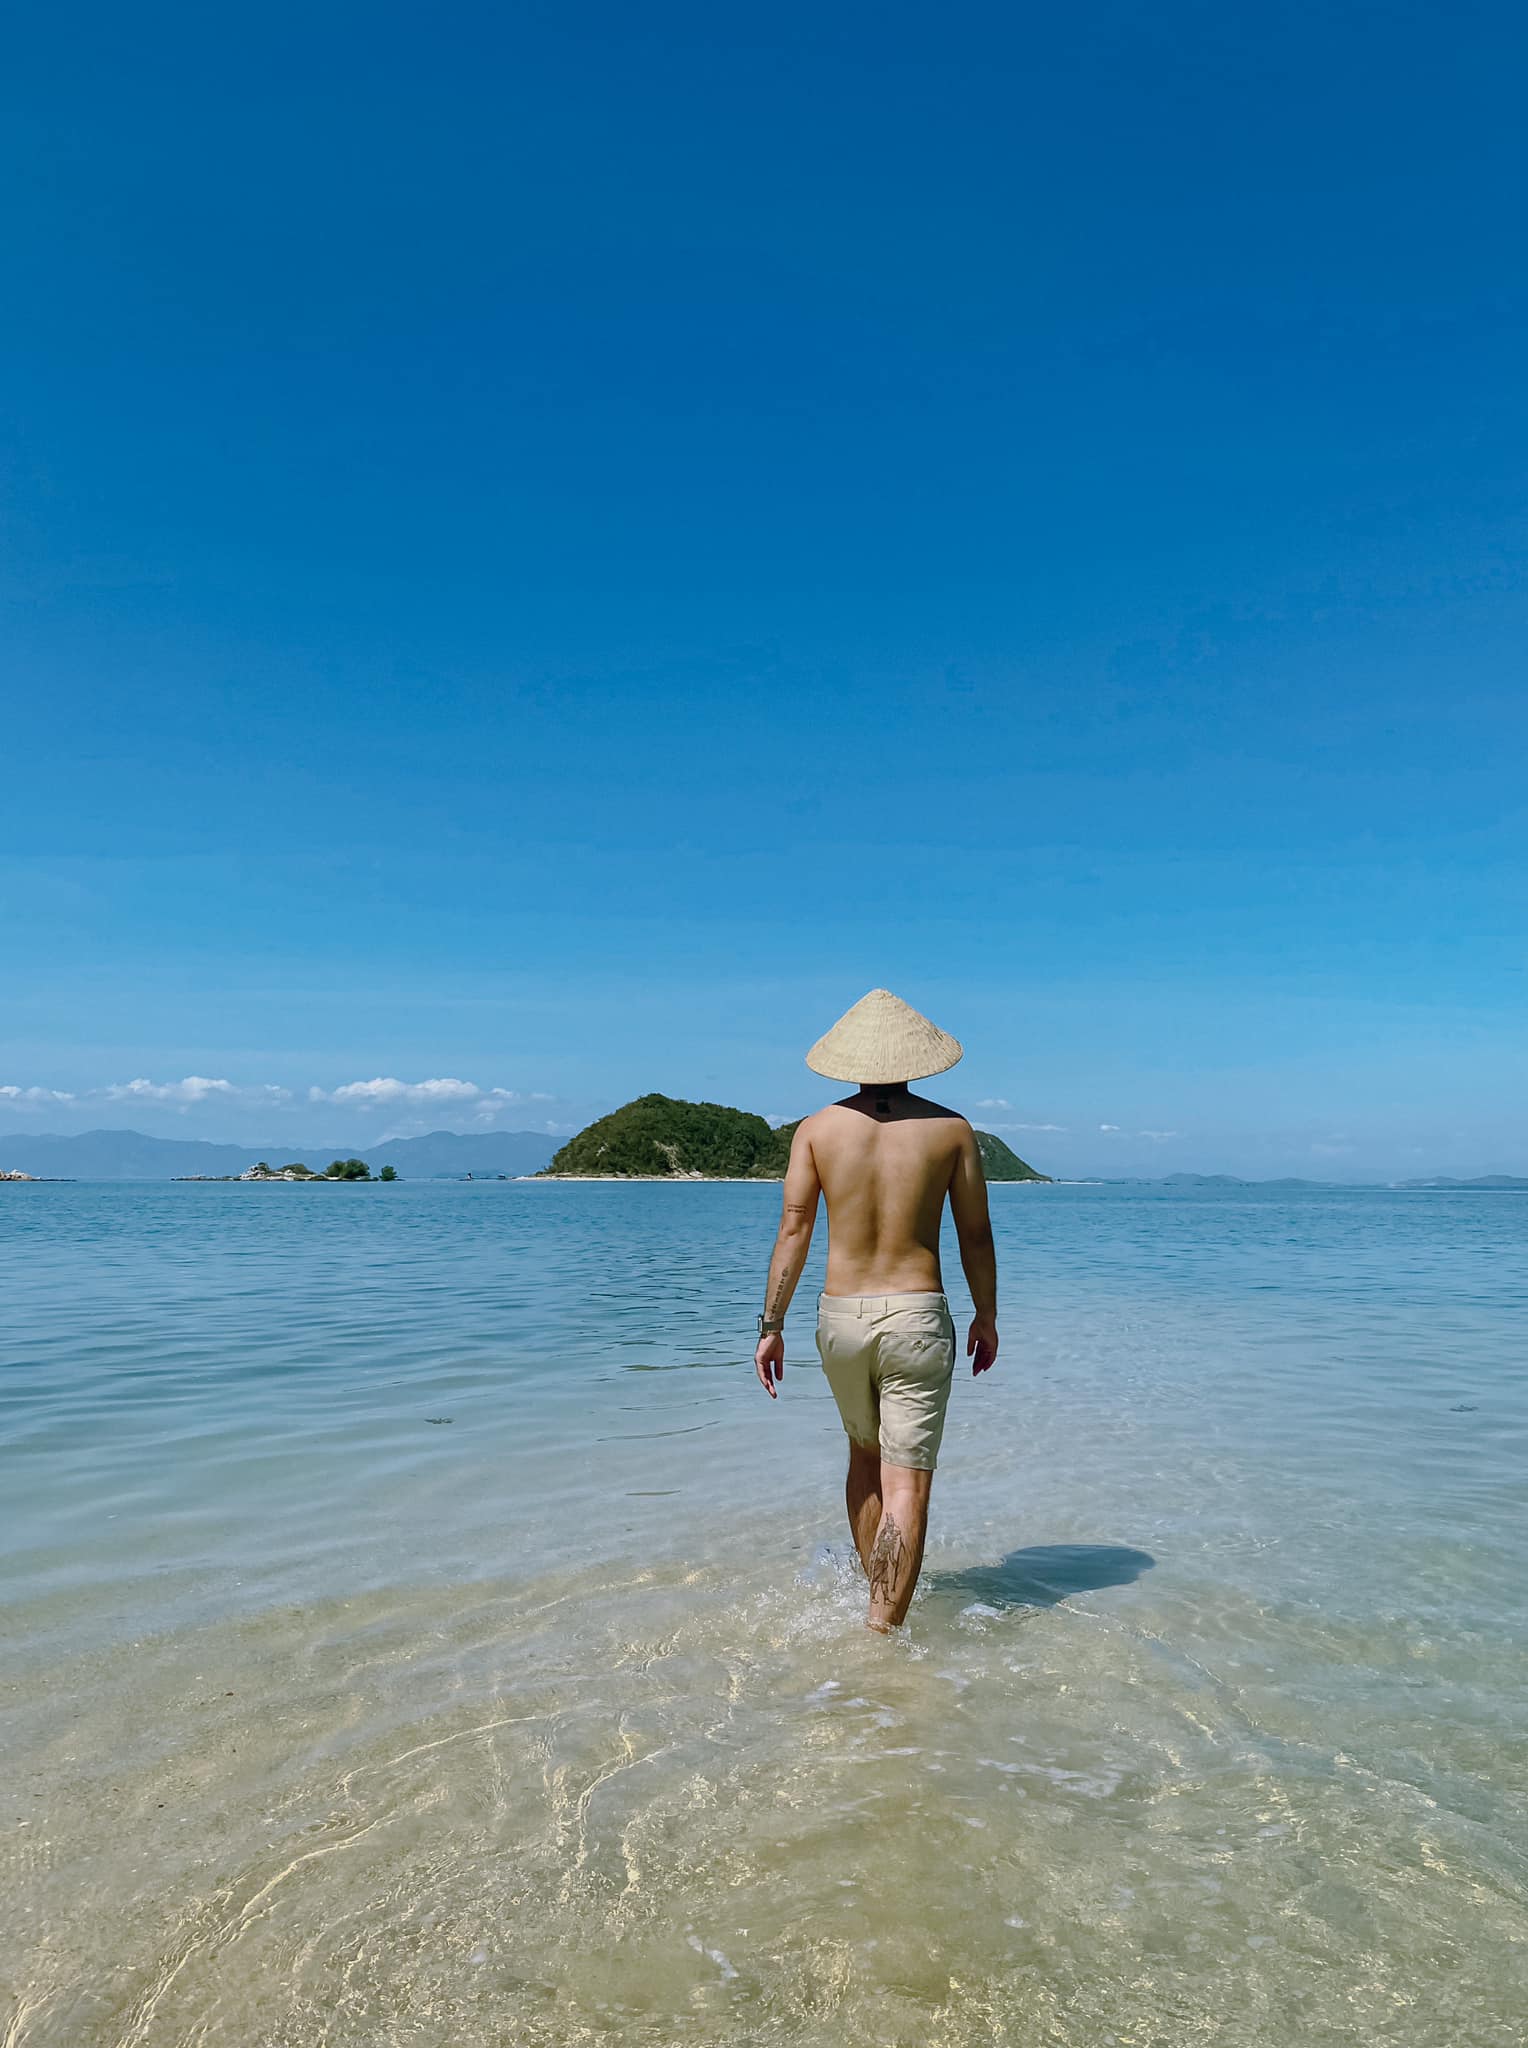 Khám phá vẻ đẹp độc đáo của đảo Điệp Sơn - Nha Trang qua bộ ảnh của Cường Quốc Phạm 8